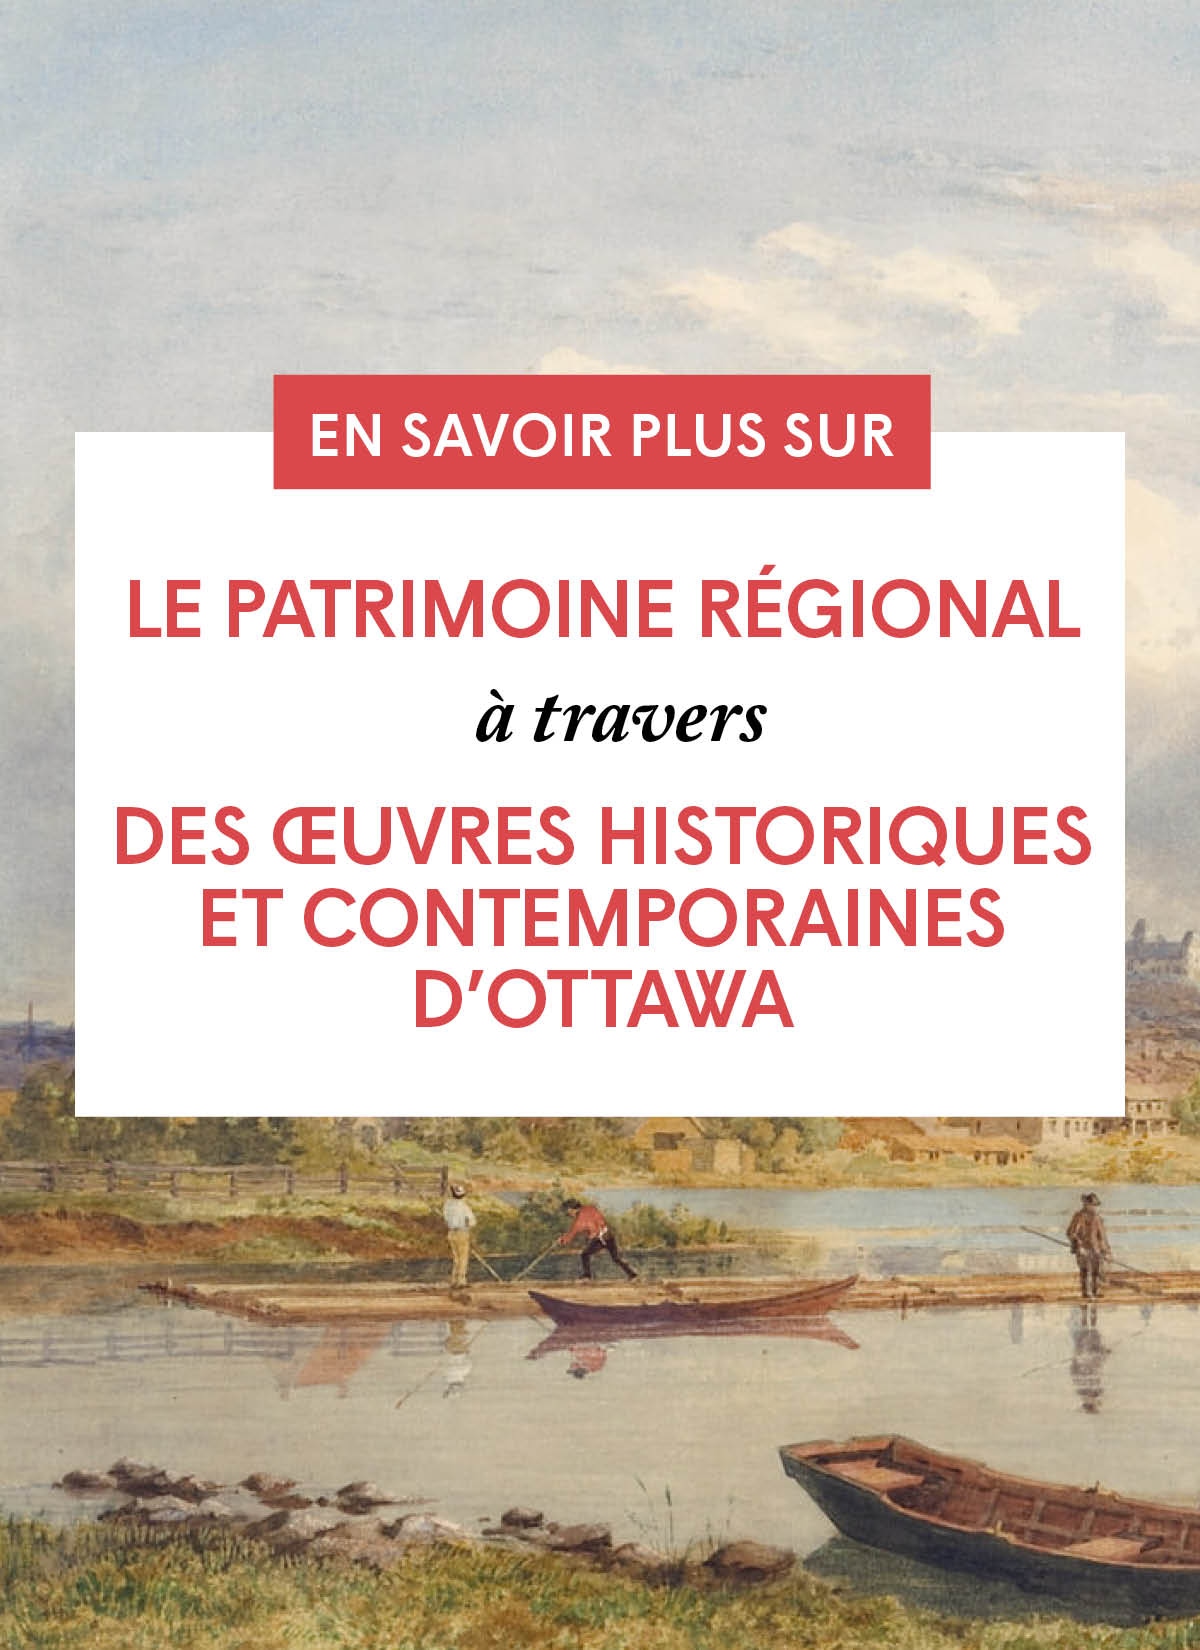 Le patrimoine régional à travers des œuvres historiques et contemporaines d'Ottawa